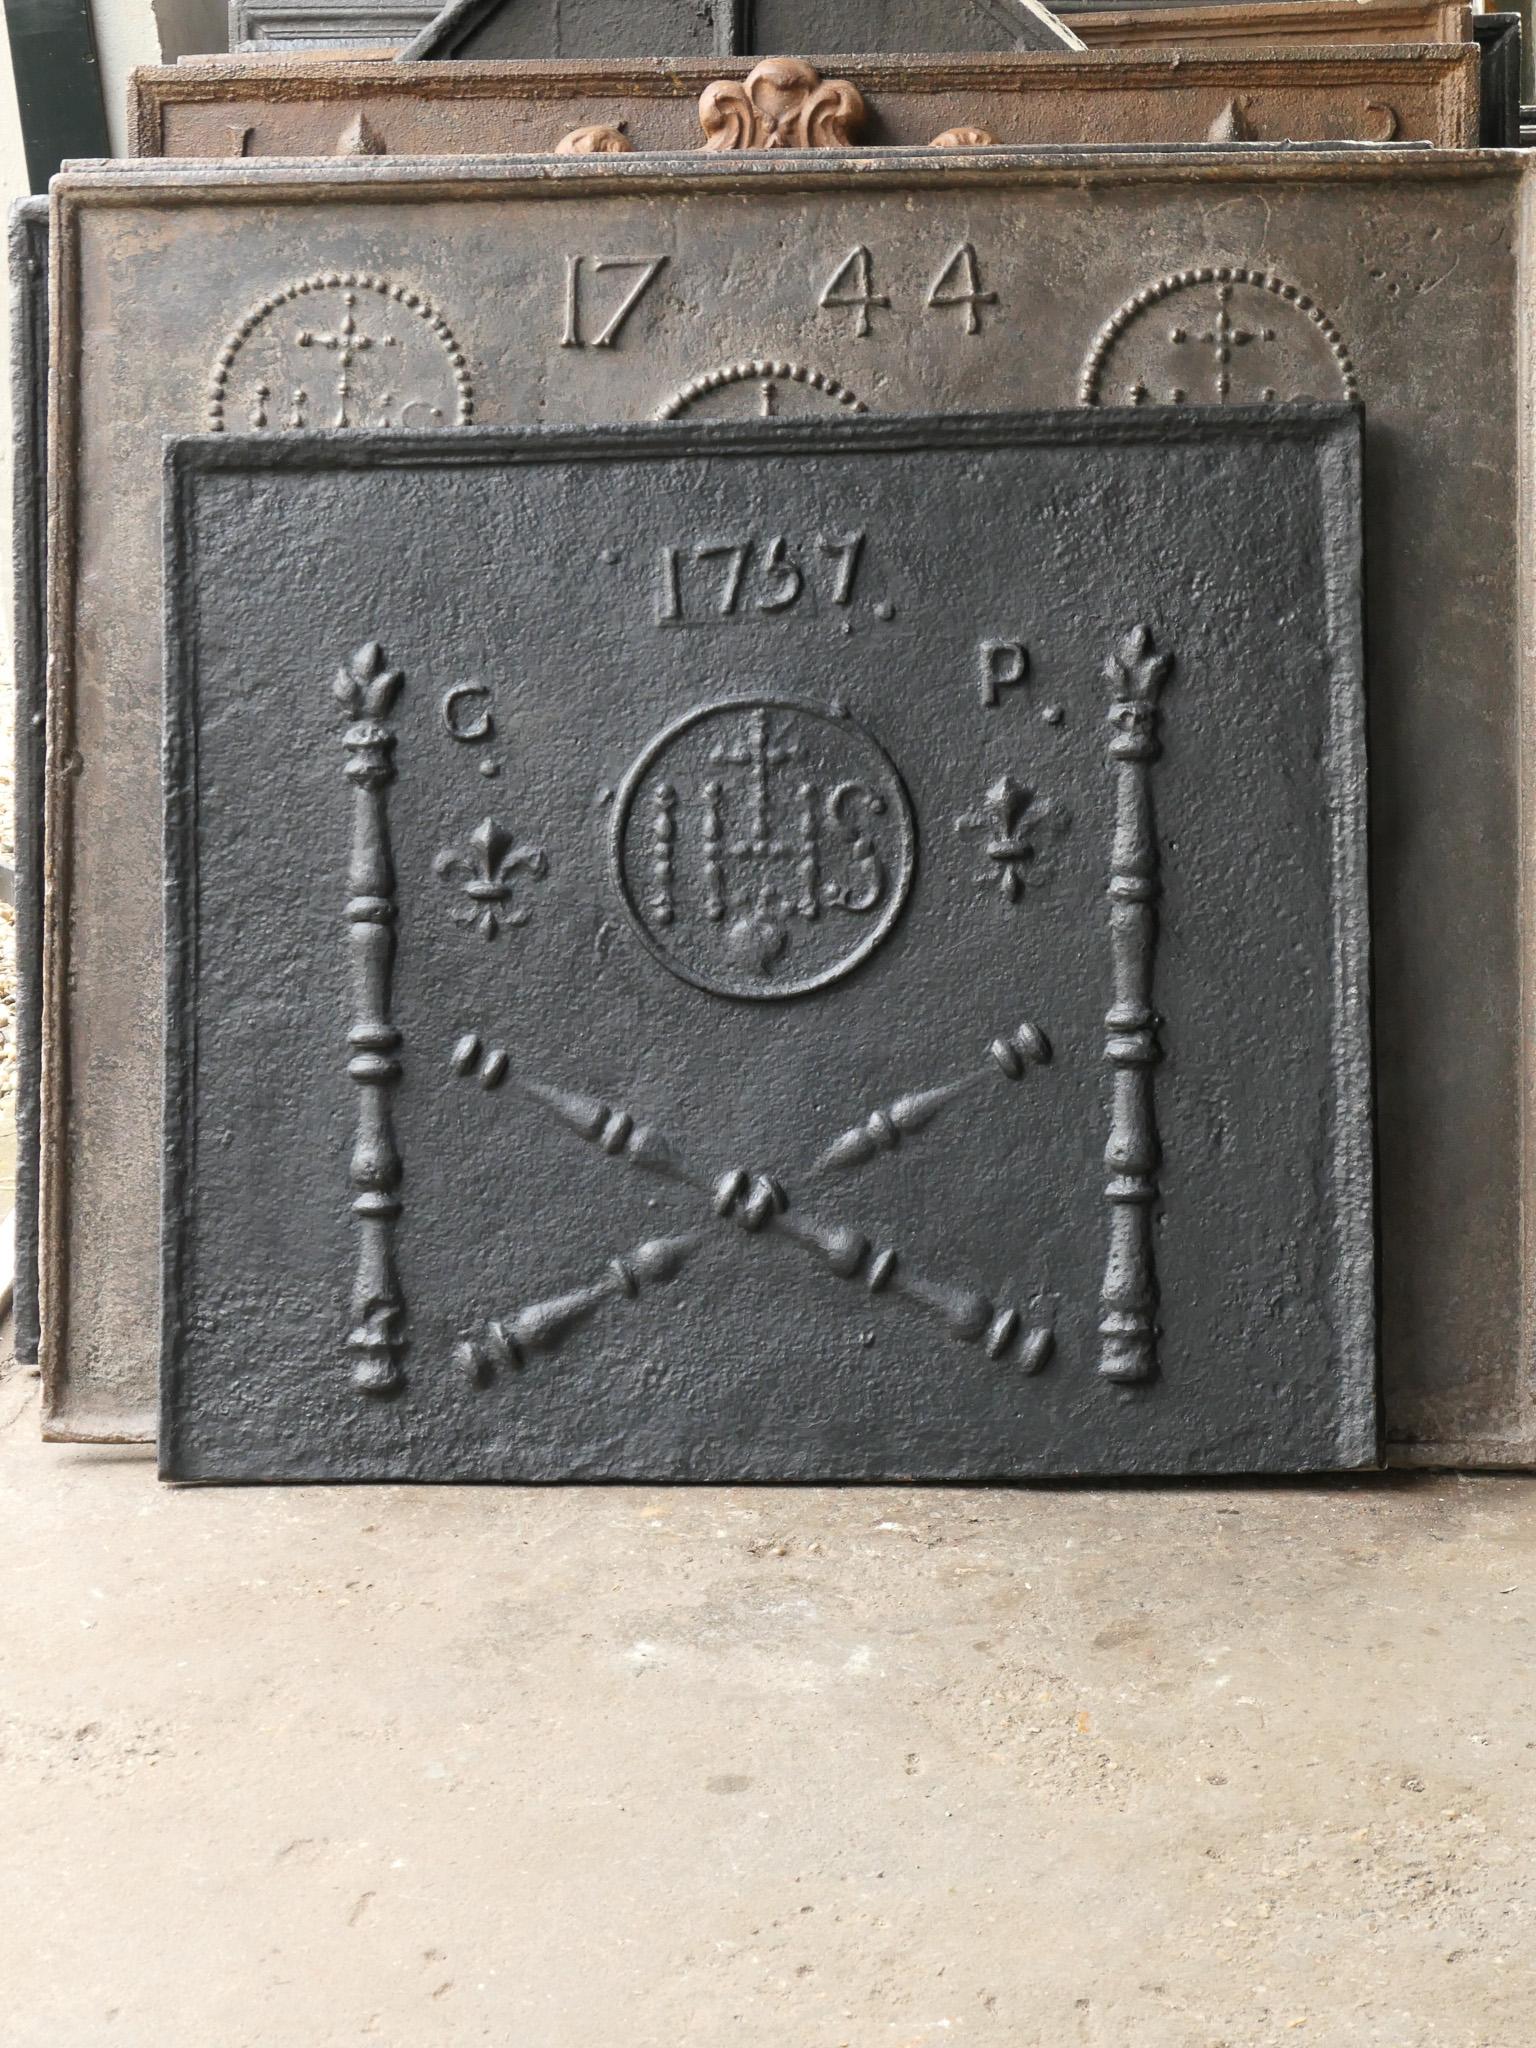 Plaque de cheminée Louis XV du XVIIIe siècle avec deux piliers, un monogramme IHS, une croix et la date de production 1757.

Le monogramme IHS signifie Iesus Hominum Salvator (Jésus Sauveur de l'humanité) ou In Hoc Signo (Dans ce signe tu gagneras).